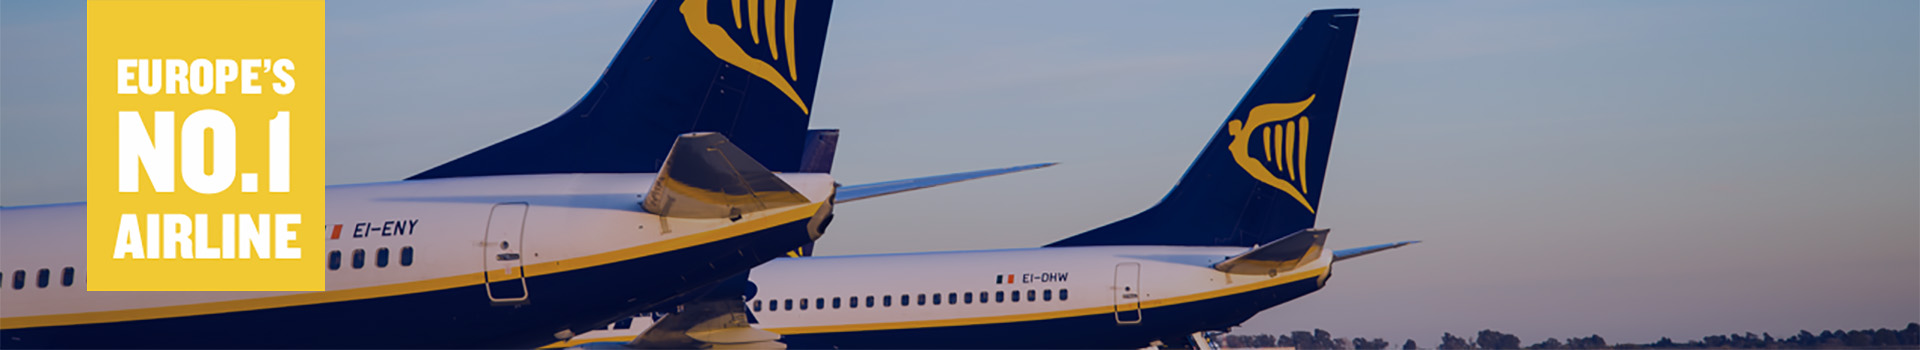 Cancelaciones Ryanair: reembolsos, cambios, bonos - Foro Aviones, Aeropuertos y Líneas Aéreas